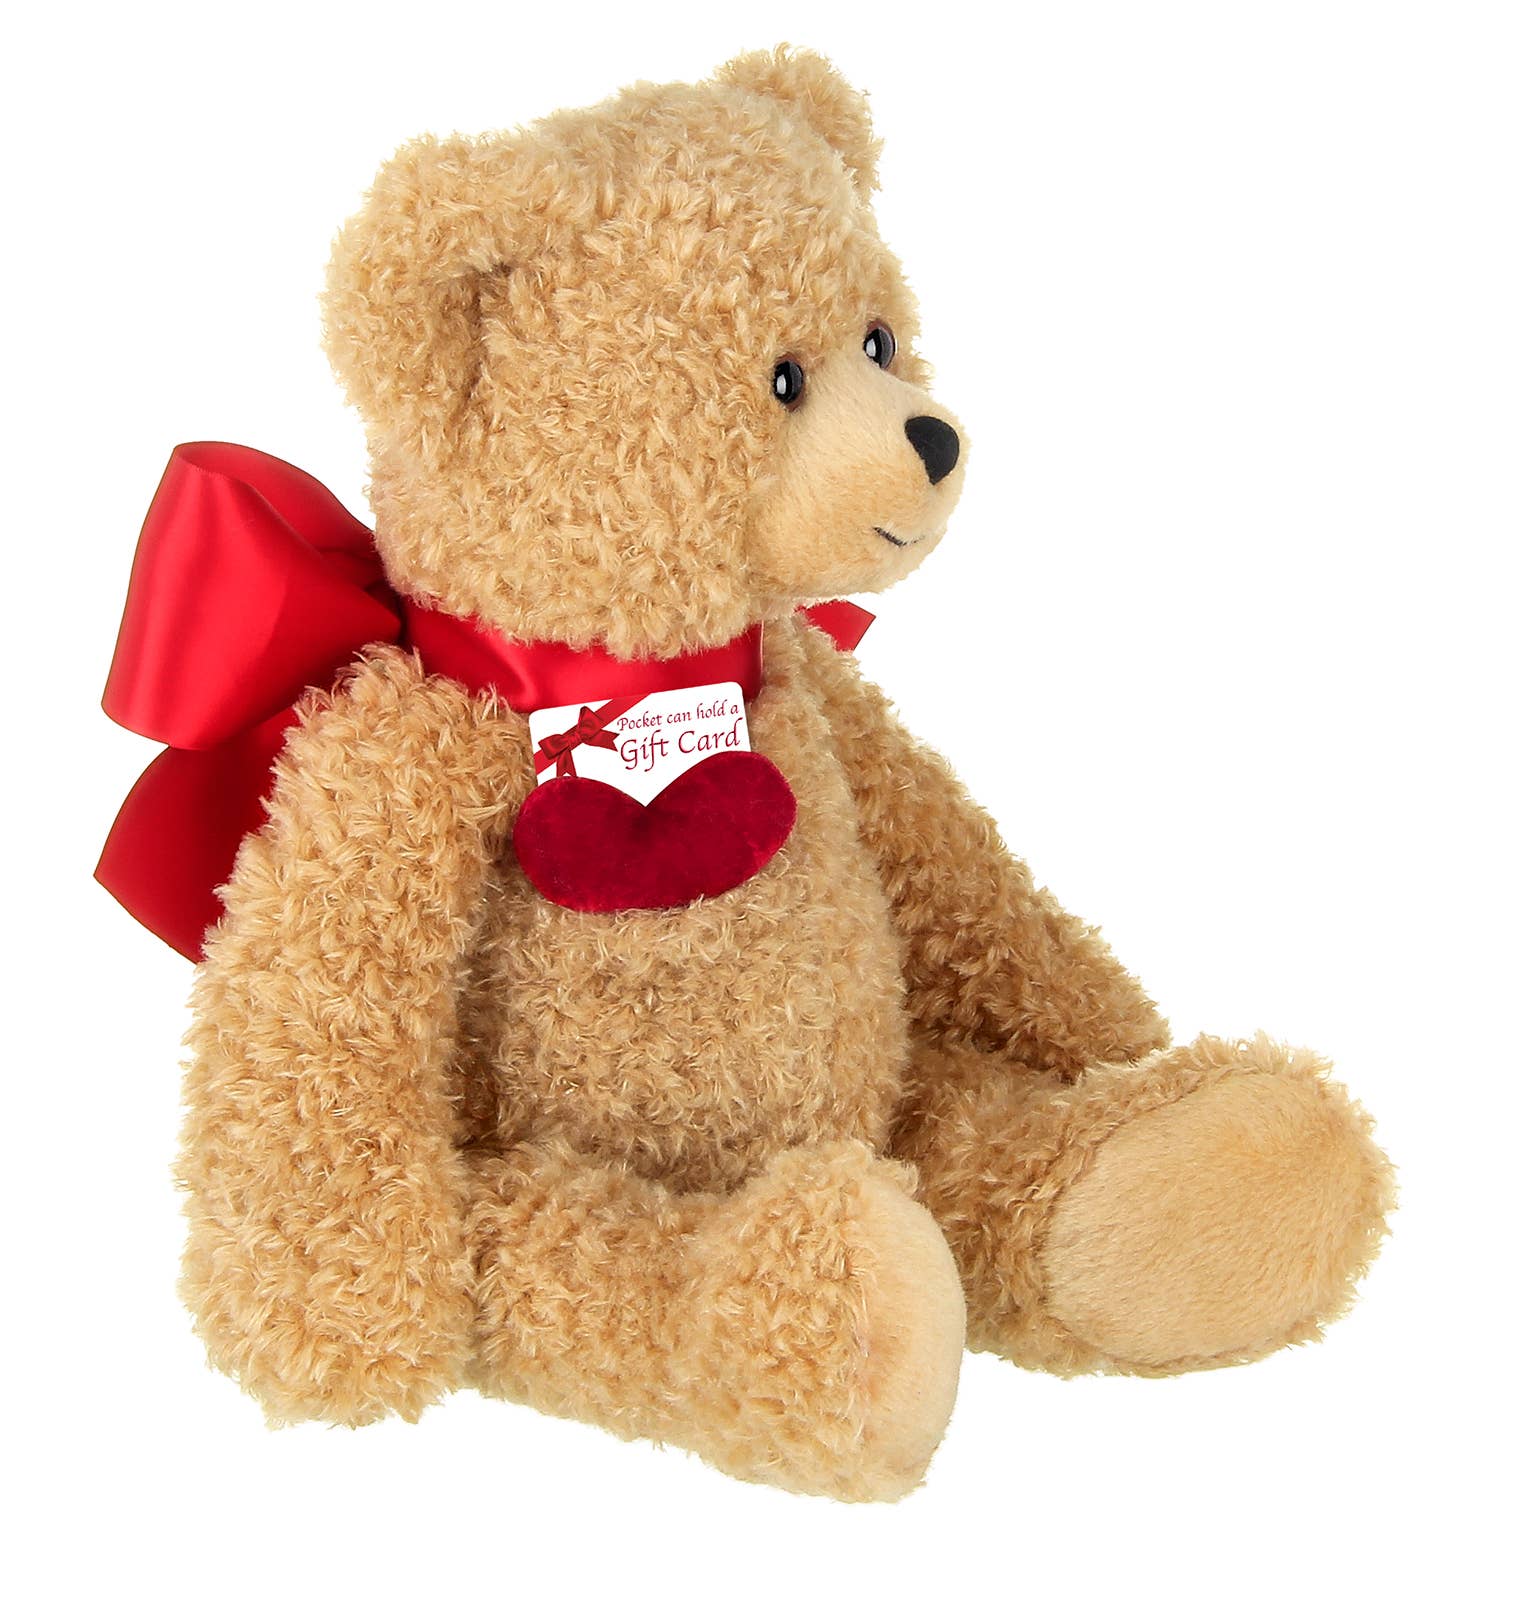 Bearington Collection - Harry Heartstrings the teddy bear